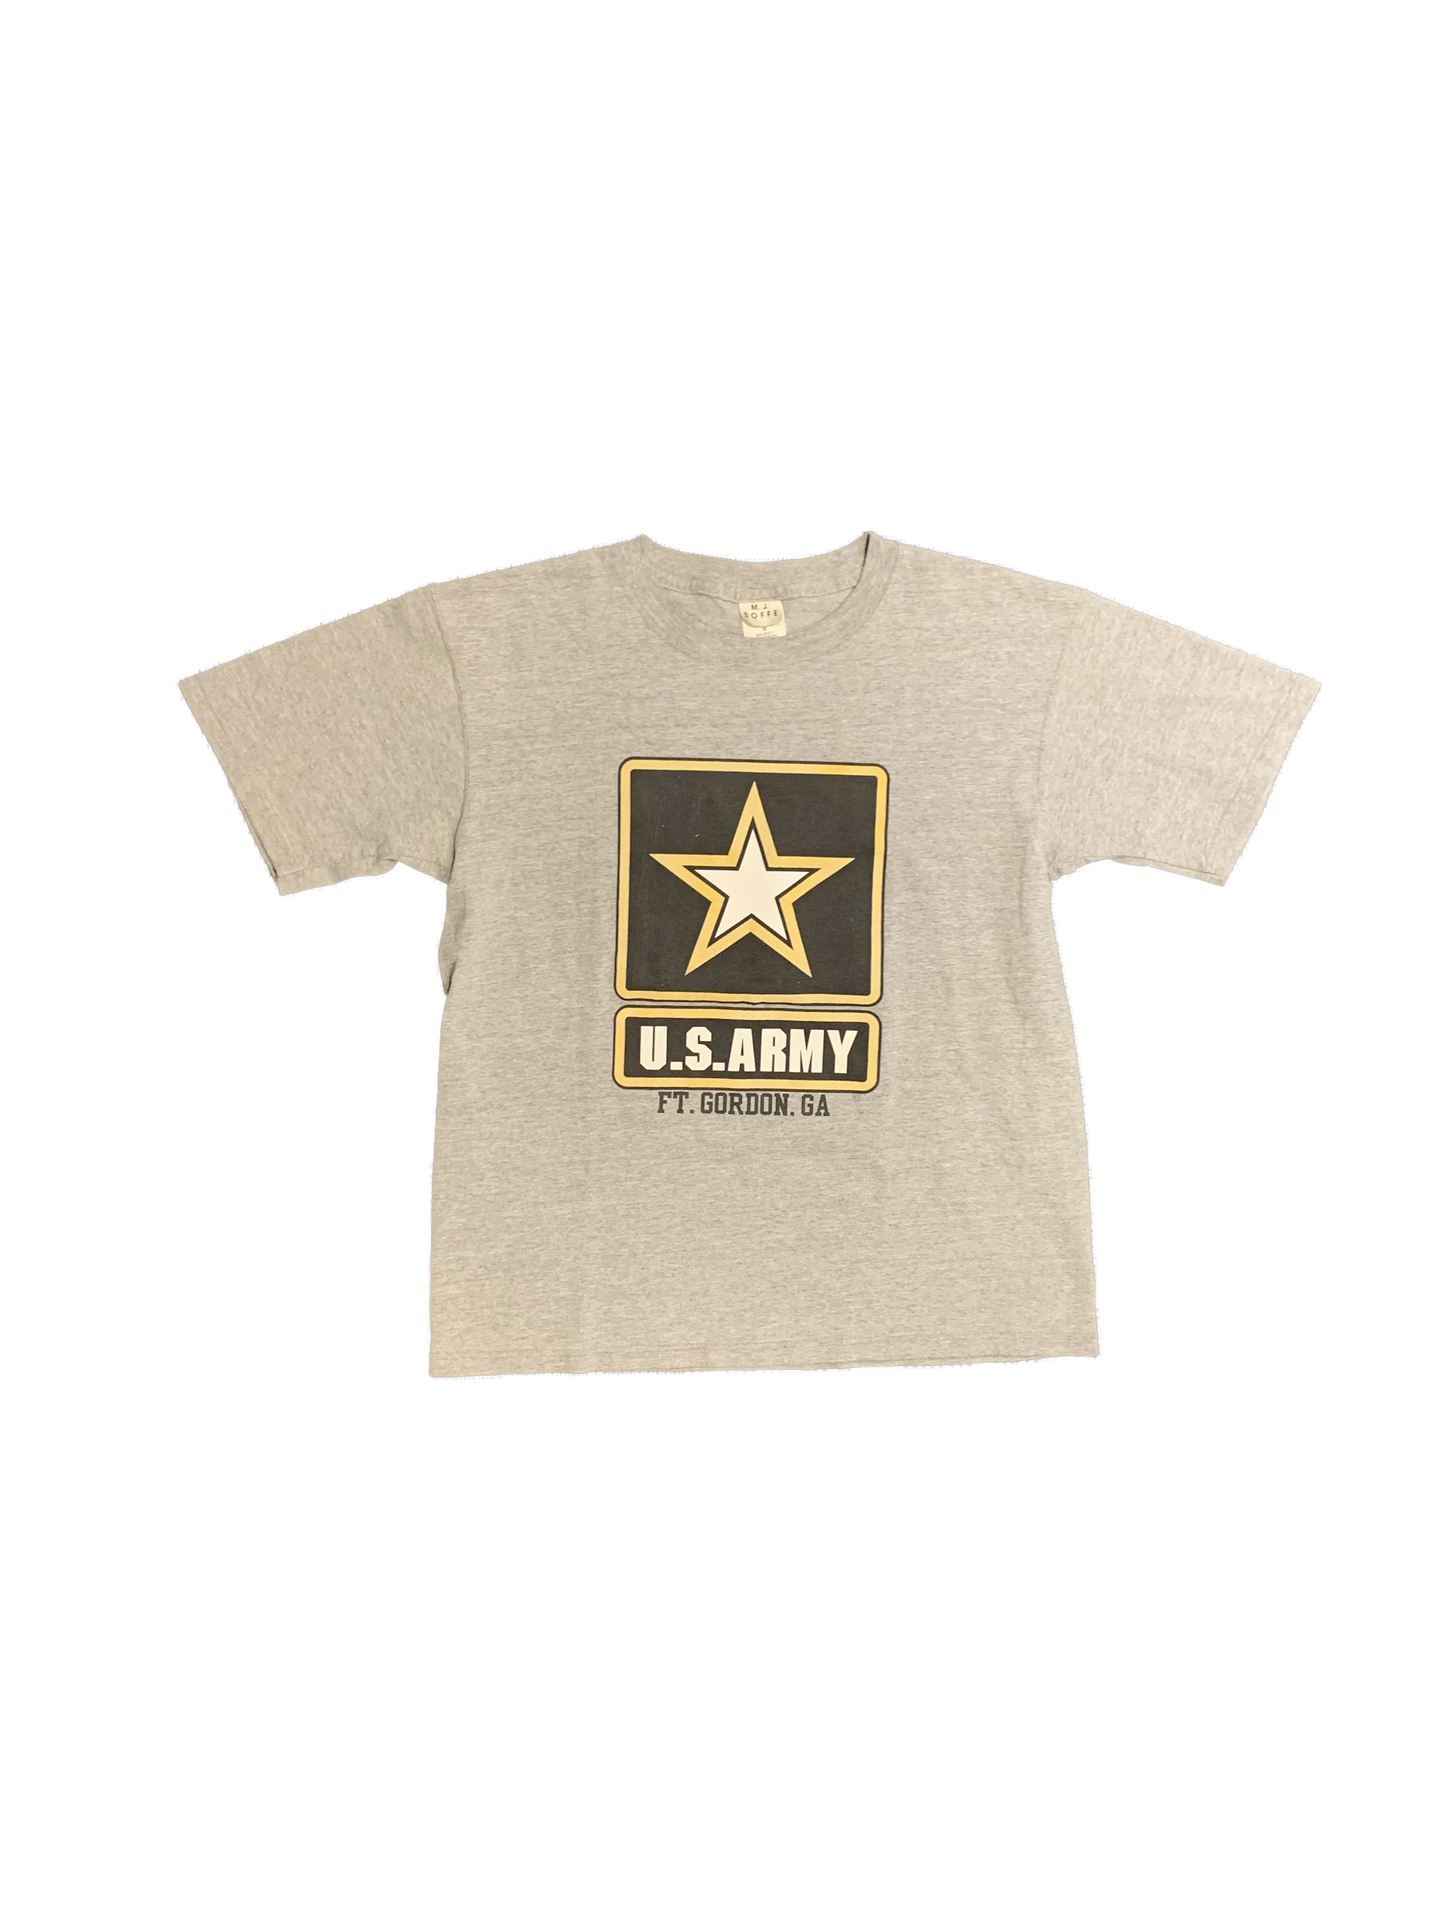 T-shirt de l'armée américaine